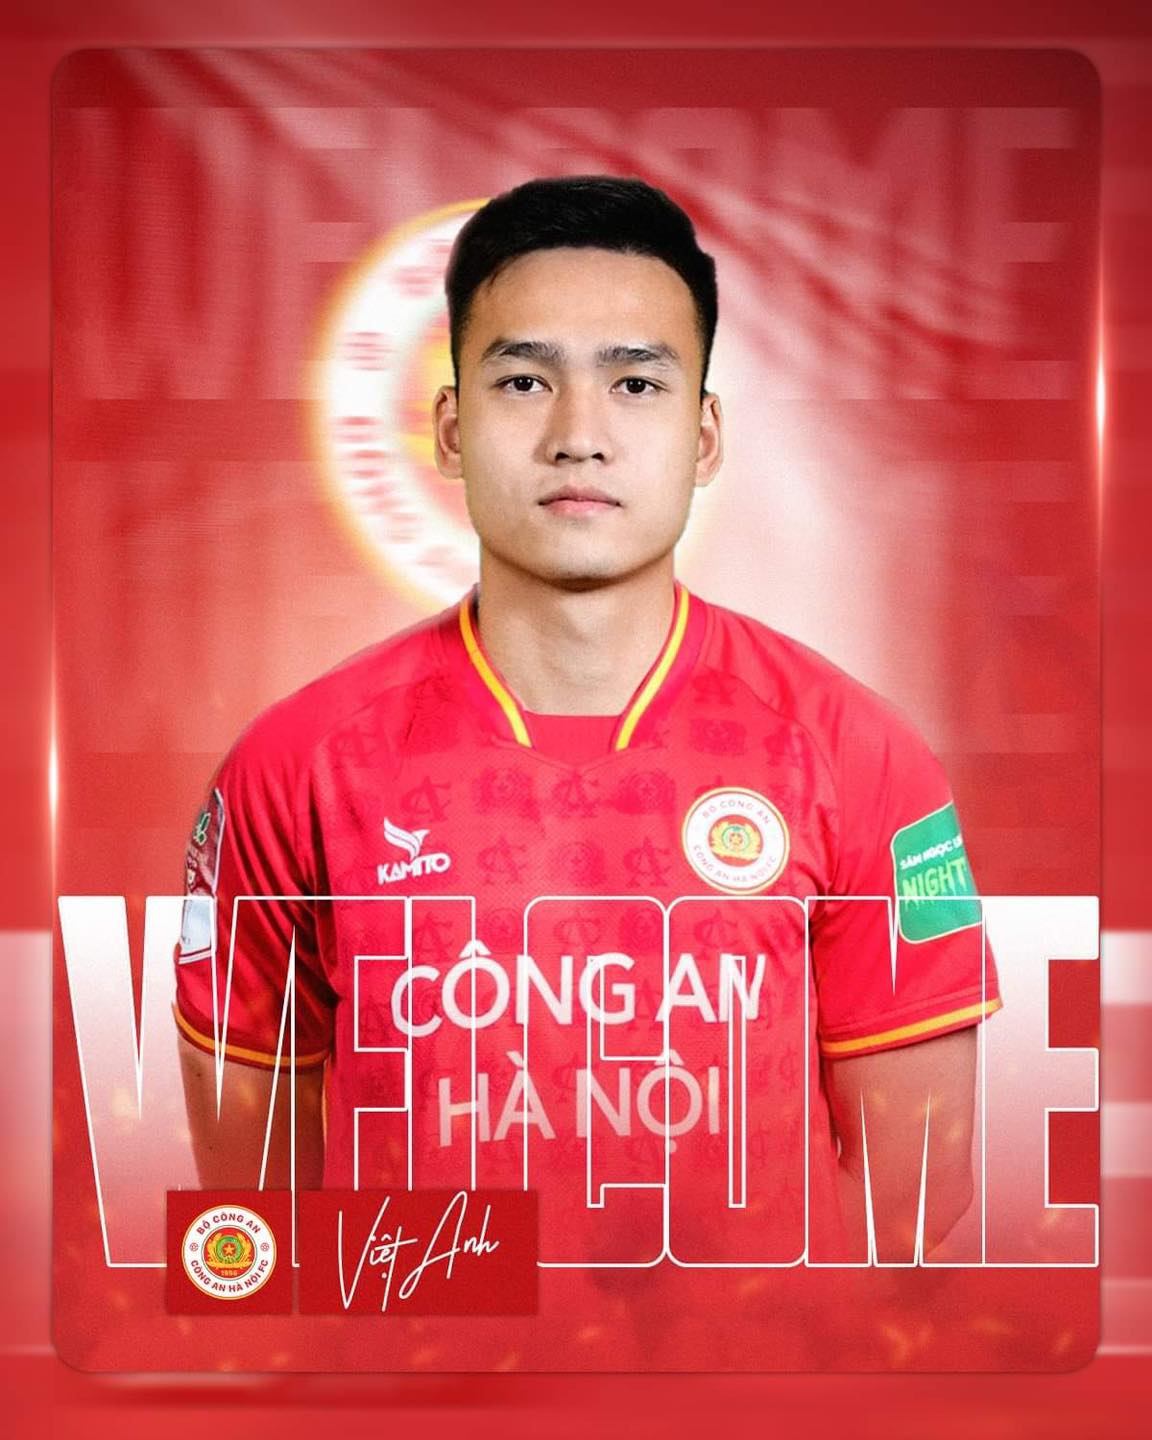 Bùi Hoàng Việt Anh gia nhập Công an Hà Nội. Ảnh: CAHN FC